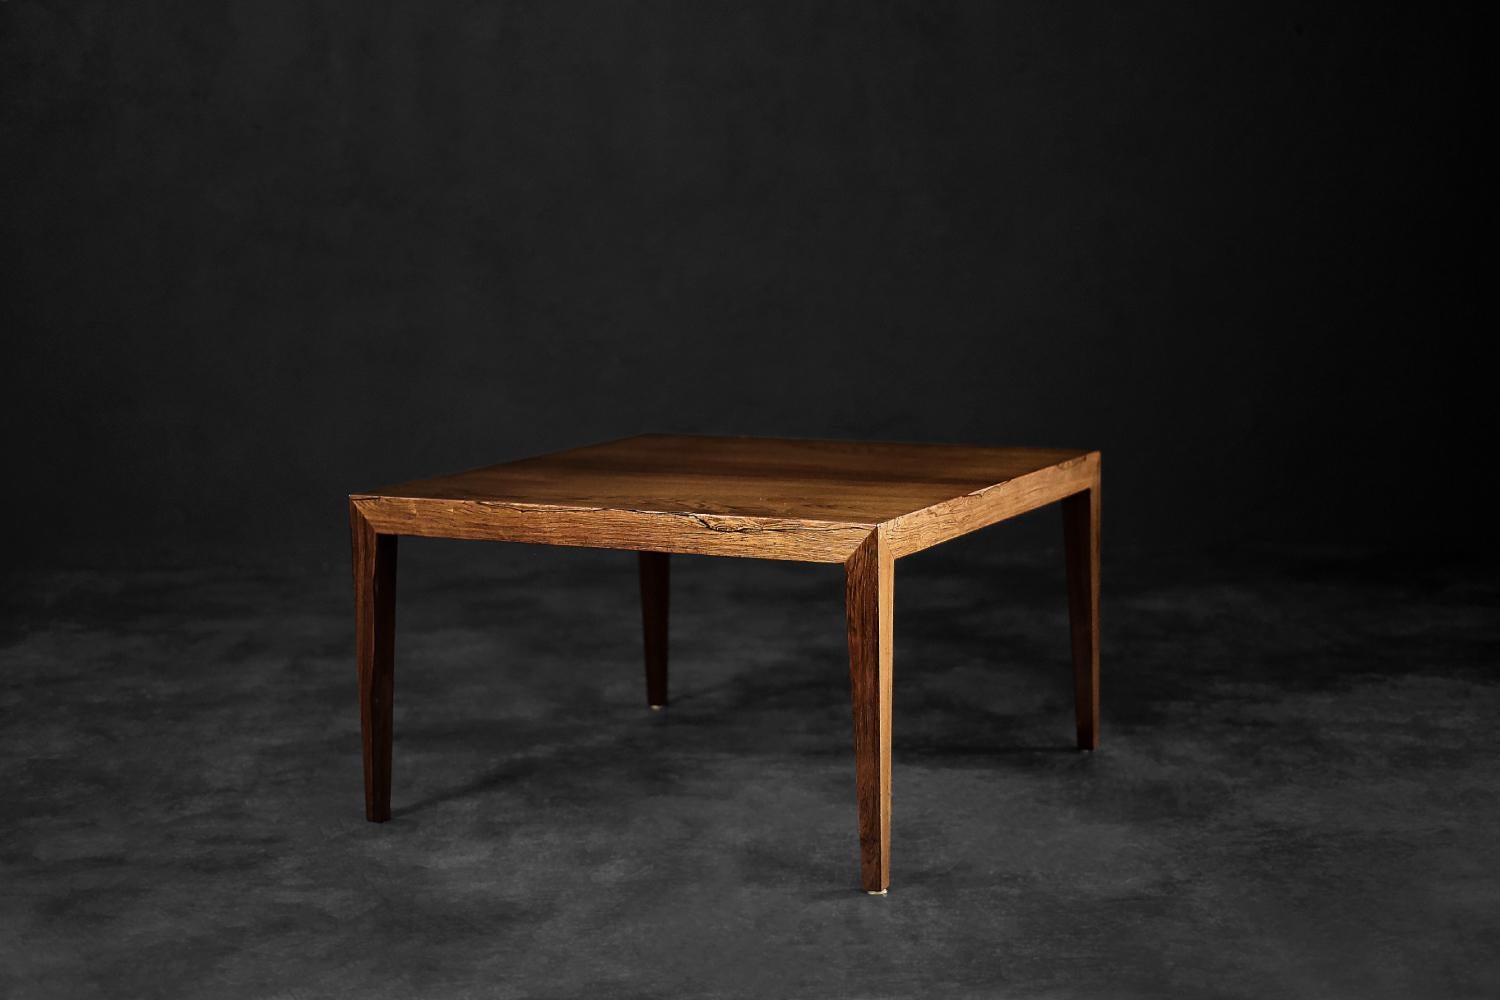 Dieser klassische Couchtisch wurde in den 1960er Jahren von Severin Hansen für den dänischen Hersteller Haslev Møbelsnedskeri entworfen. Der geometrische Tisch ist aus edlem Palisanderholz in einem warmen Braunton gefertigt. Charakteristisch für